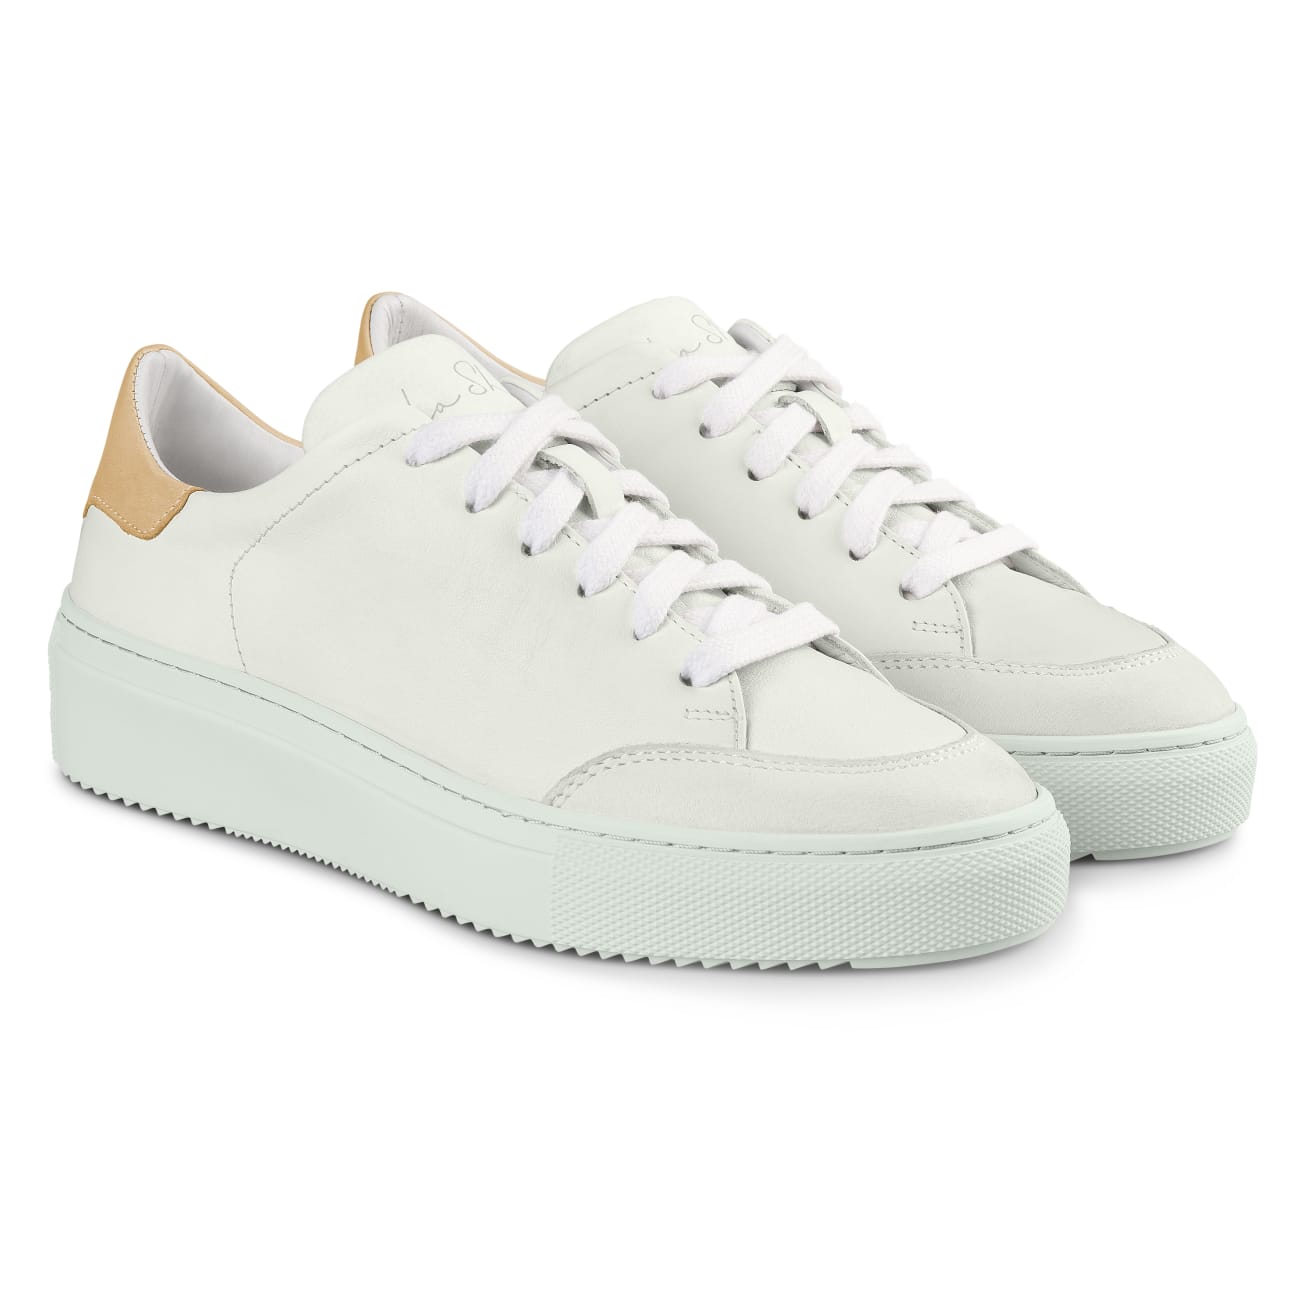 Court Sneaker Chubby Weiß/Creme – modischer und bequemer Schuh für Hallux valgus und empfindliche Füße von LaShoe.de